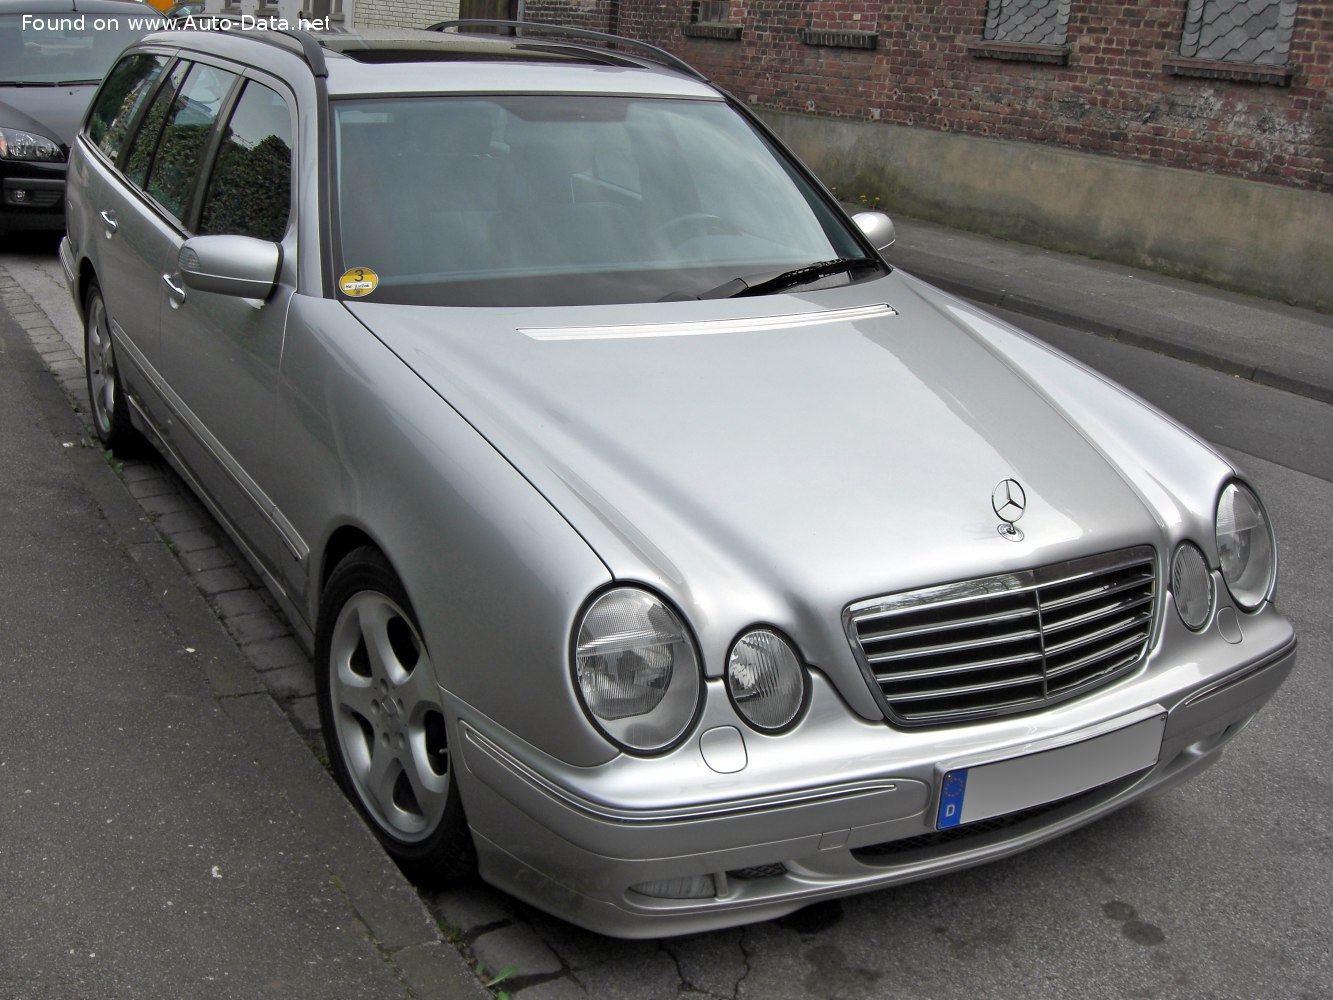 1999 MercedesBenz Classe E Tmodell (S210, facelift 1999